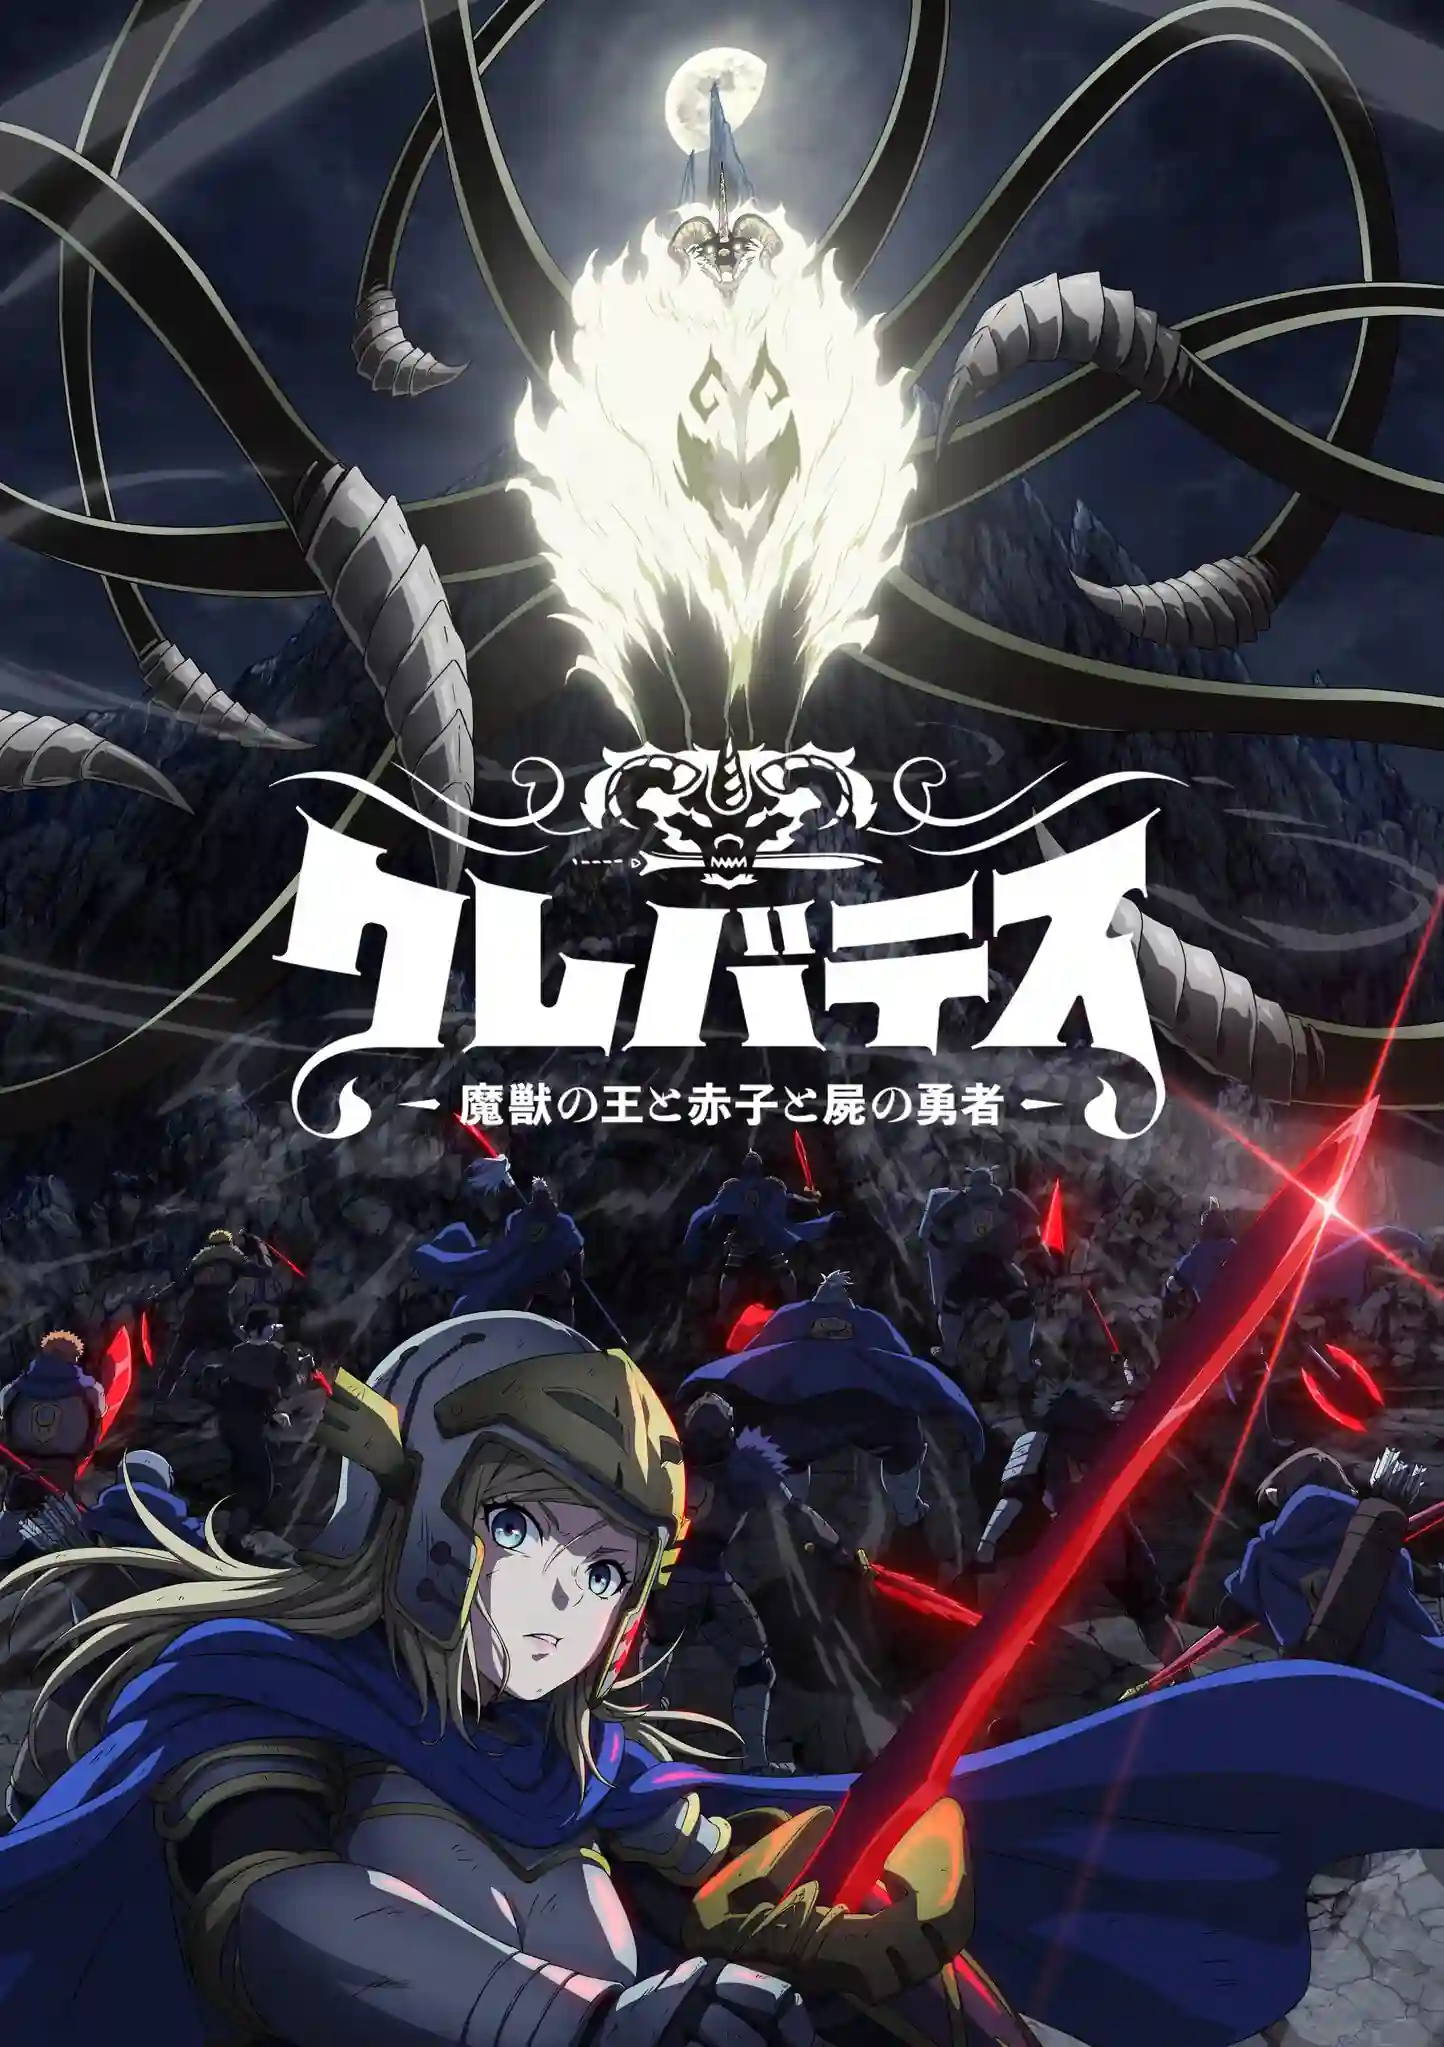 Imagem do visual do anime "Clevatess: Majuu no Ou to Akago to Shikabane no Yuusha", mostrando os personagens principais.